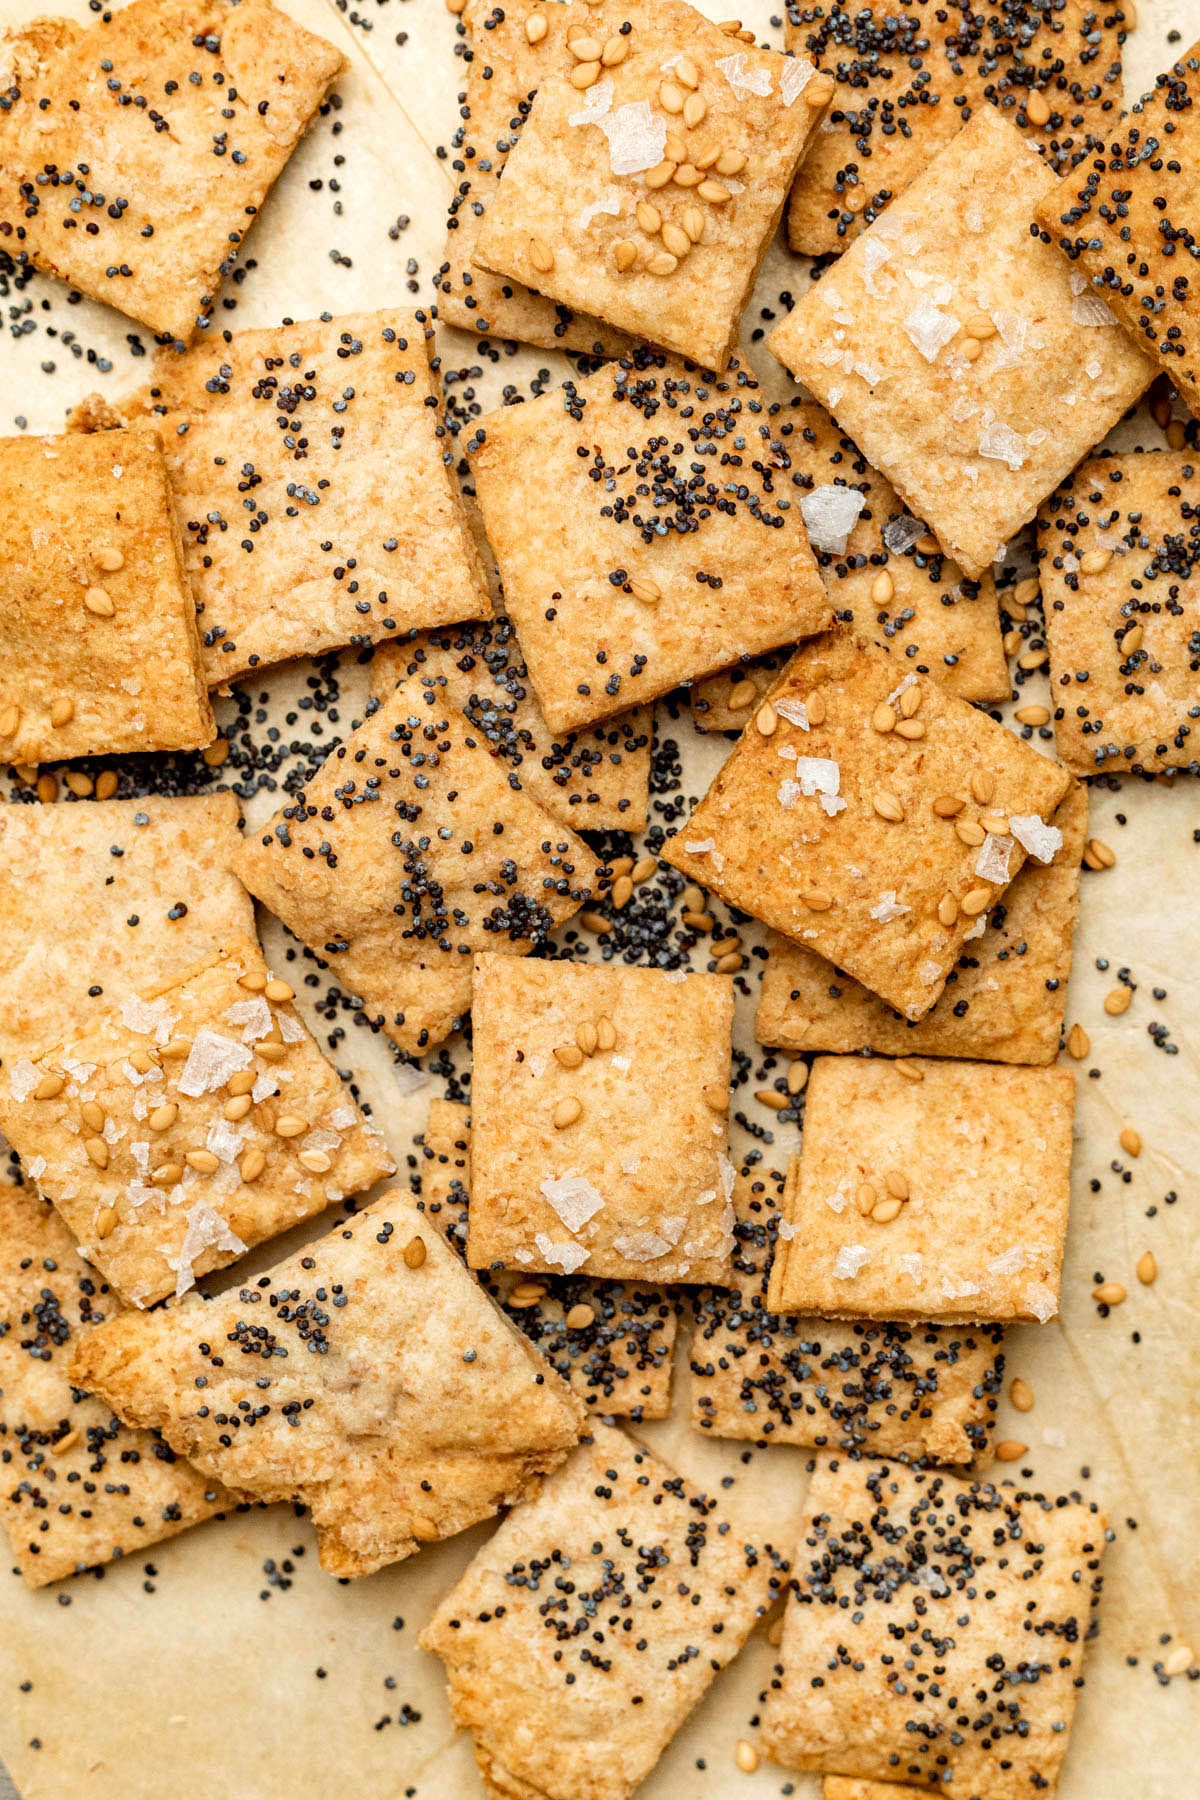 A pile of sourdough crackers.